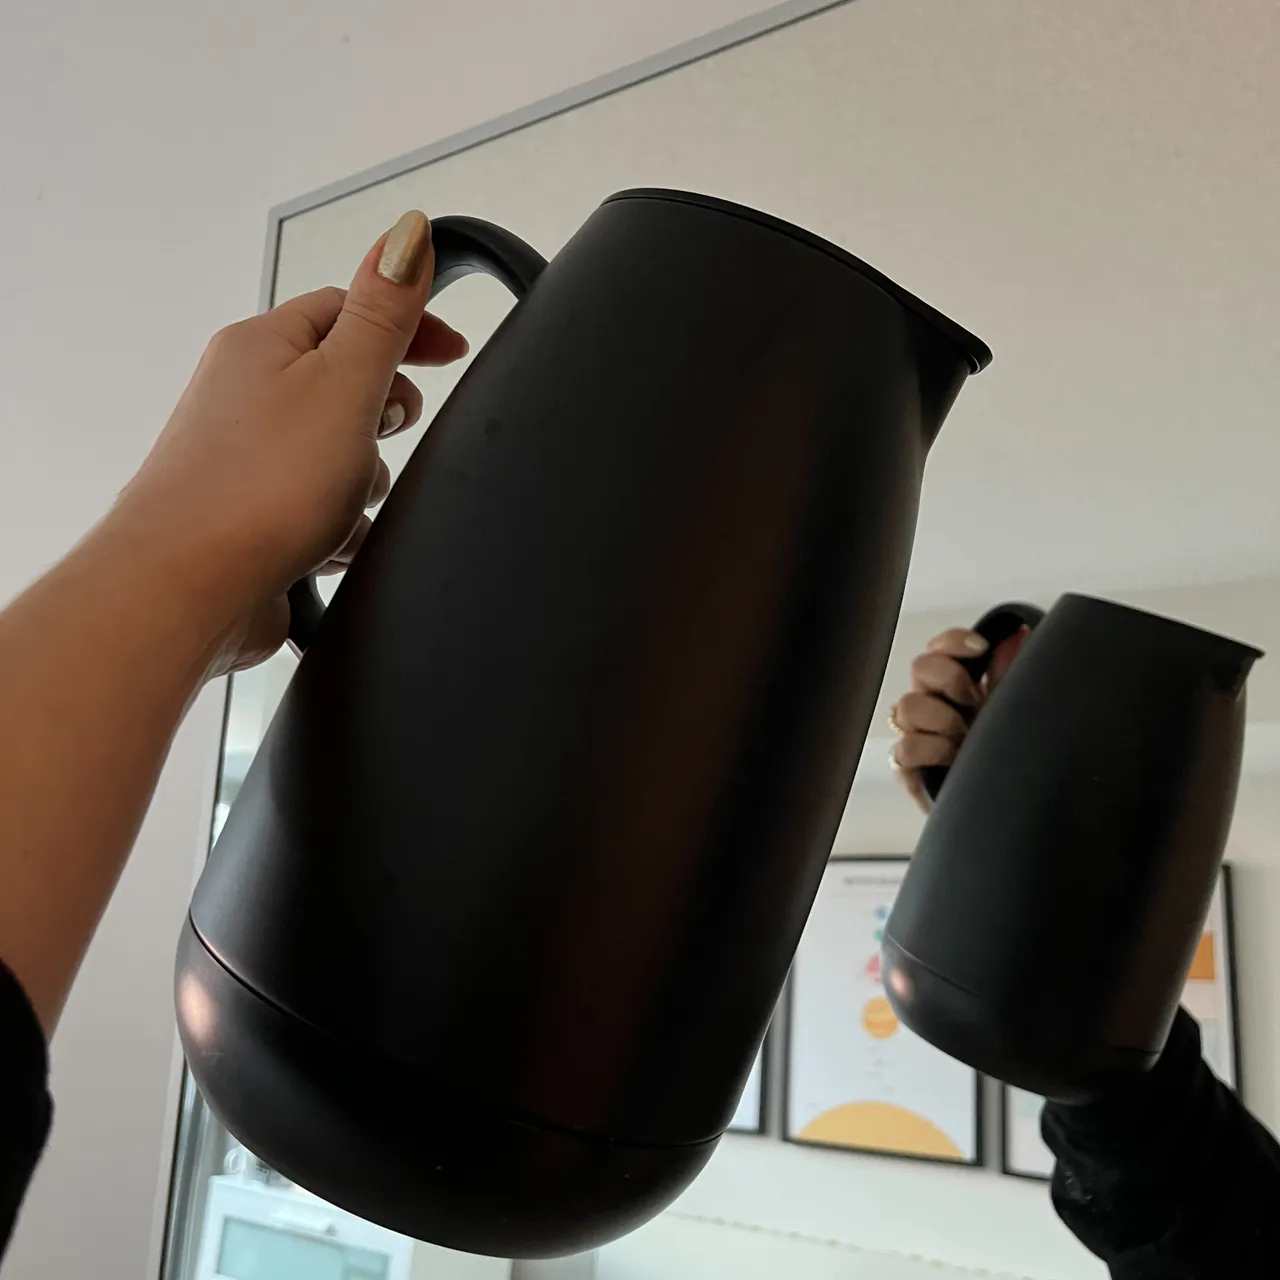 Water jug or black vase photo 1